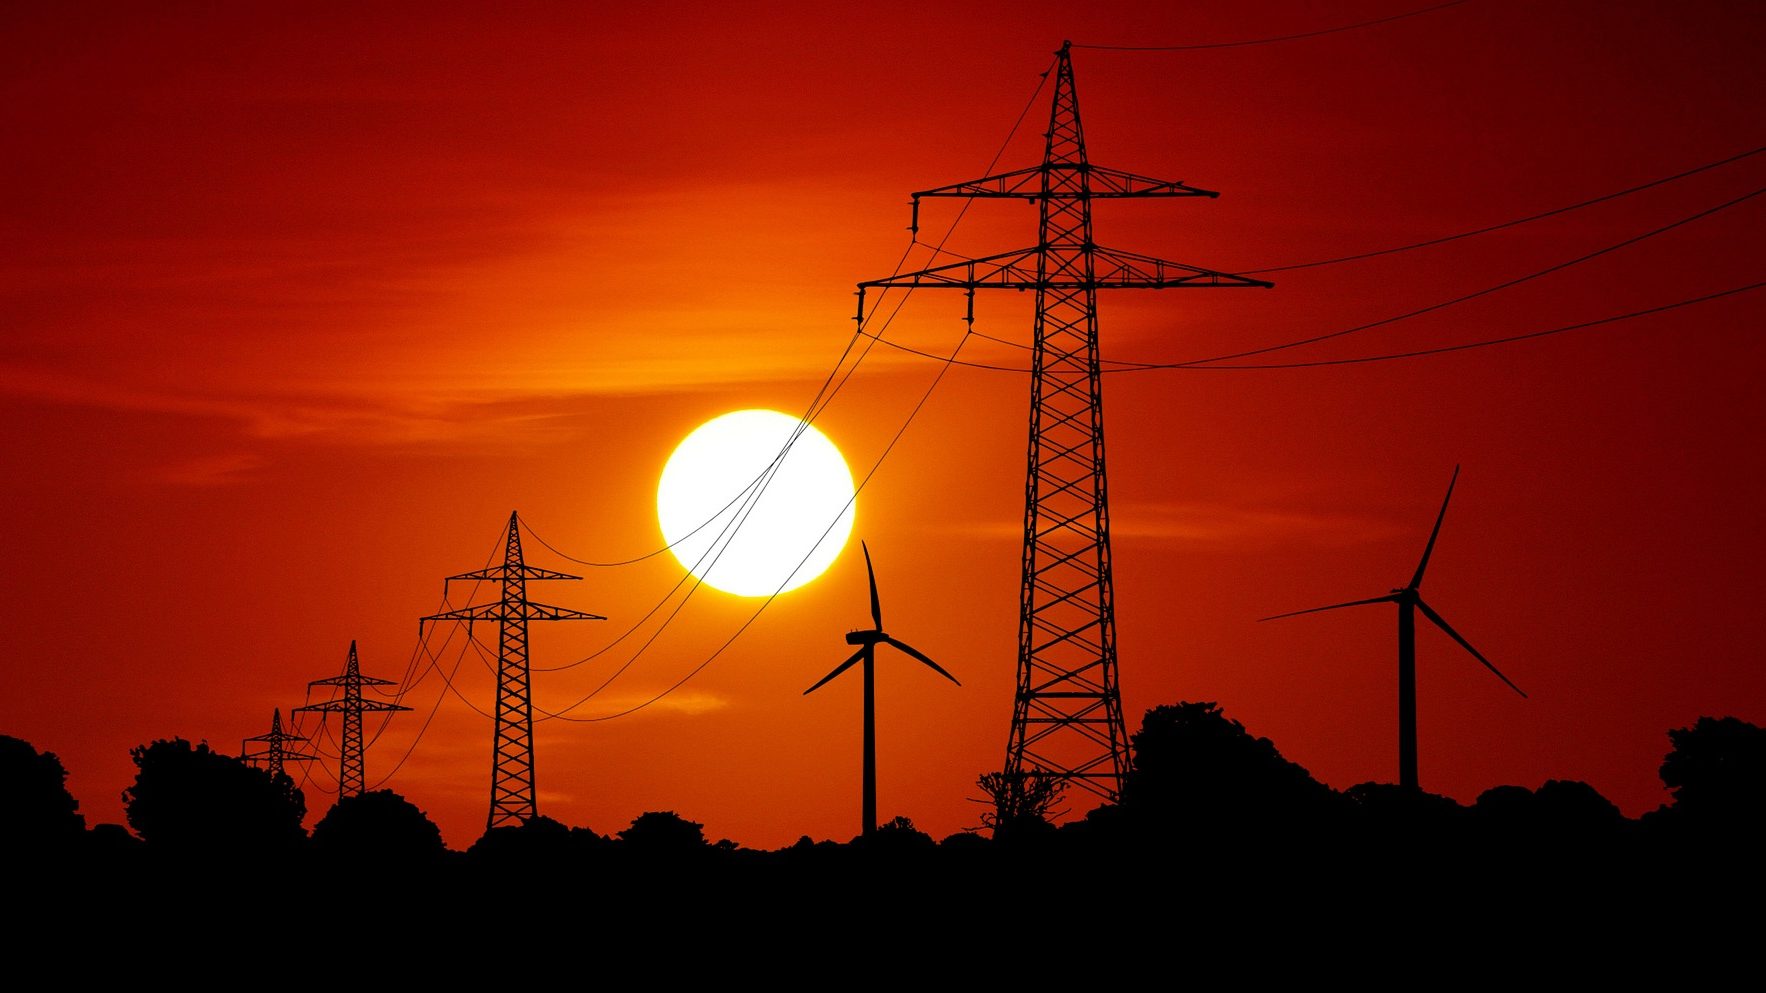 Torres e linhas de transmissão de energia com turbinas eólicas ao fundo e, no horizonte, o sol se põe (Foto: Peter Schmidt/Terranaut/Pixabay)